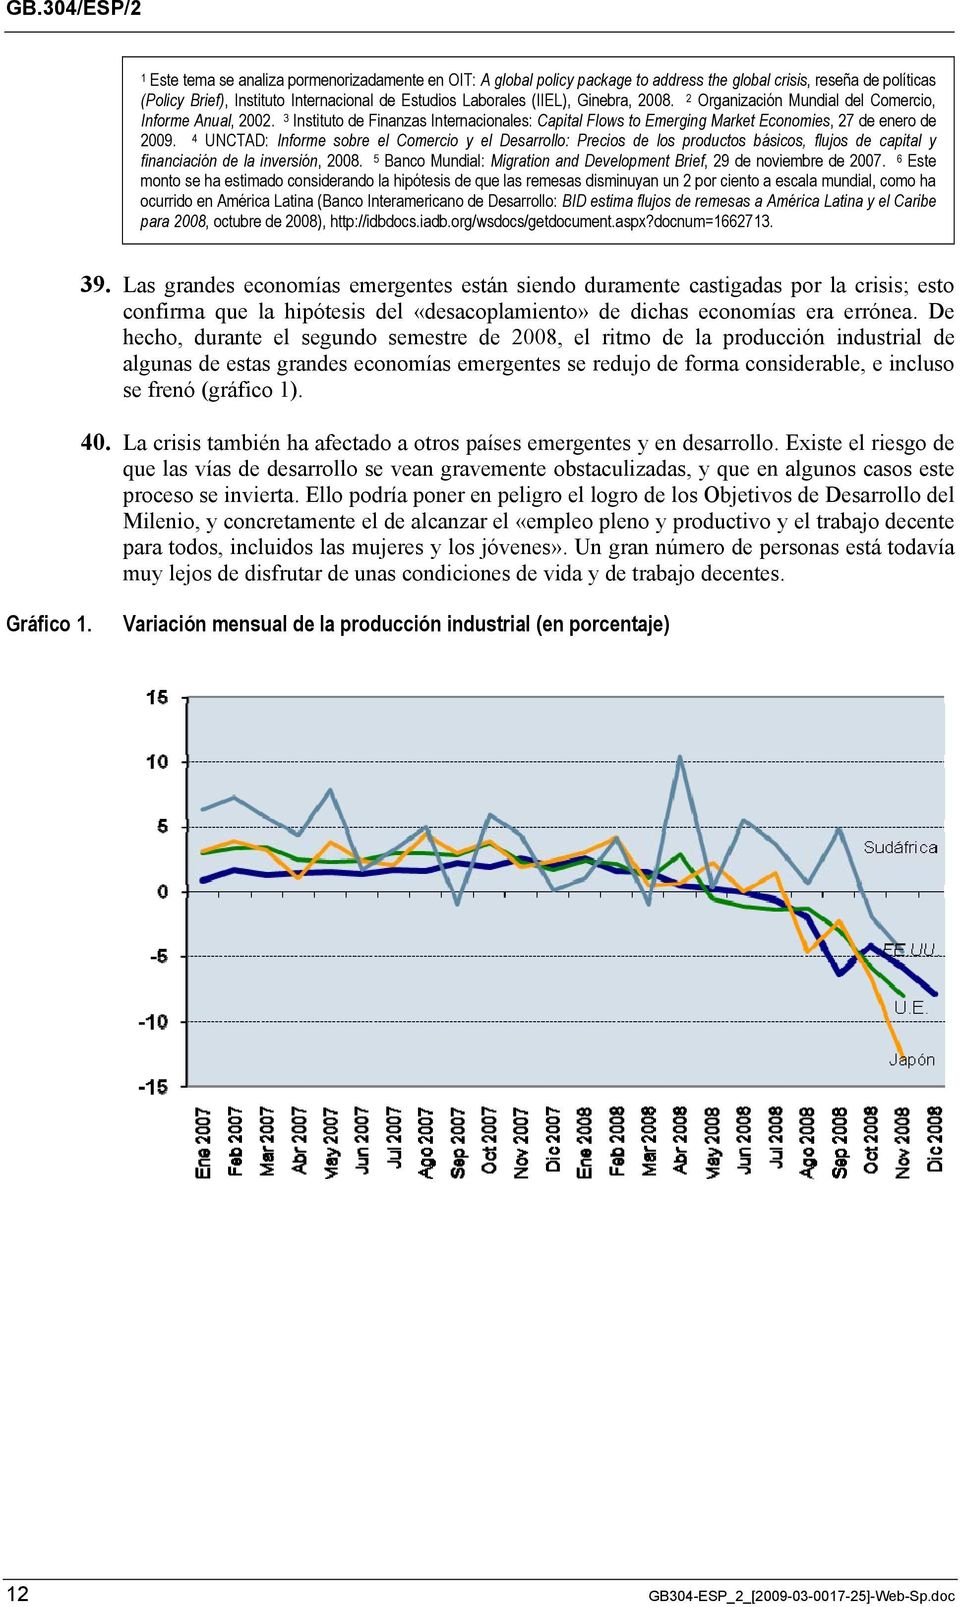 4 UNCTAD: Informe sobre el Comercio y el Desarrollo: Precios de los productos básicos, flujos de capital y financiación de la inversión, 2008.